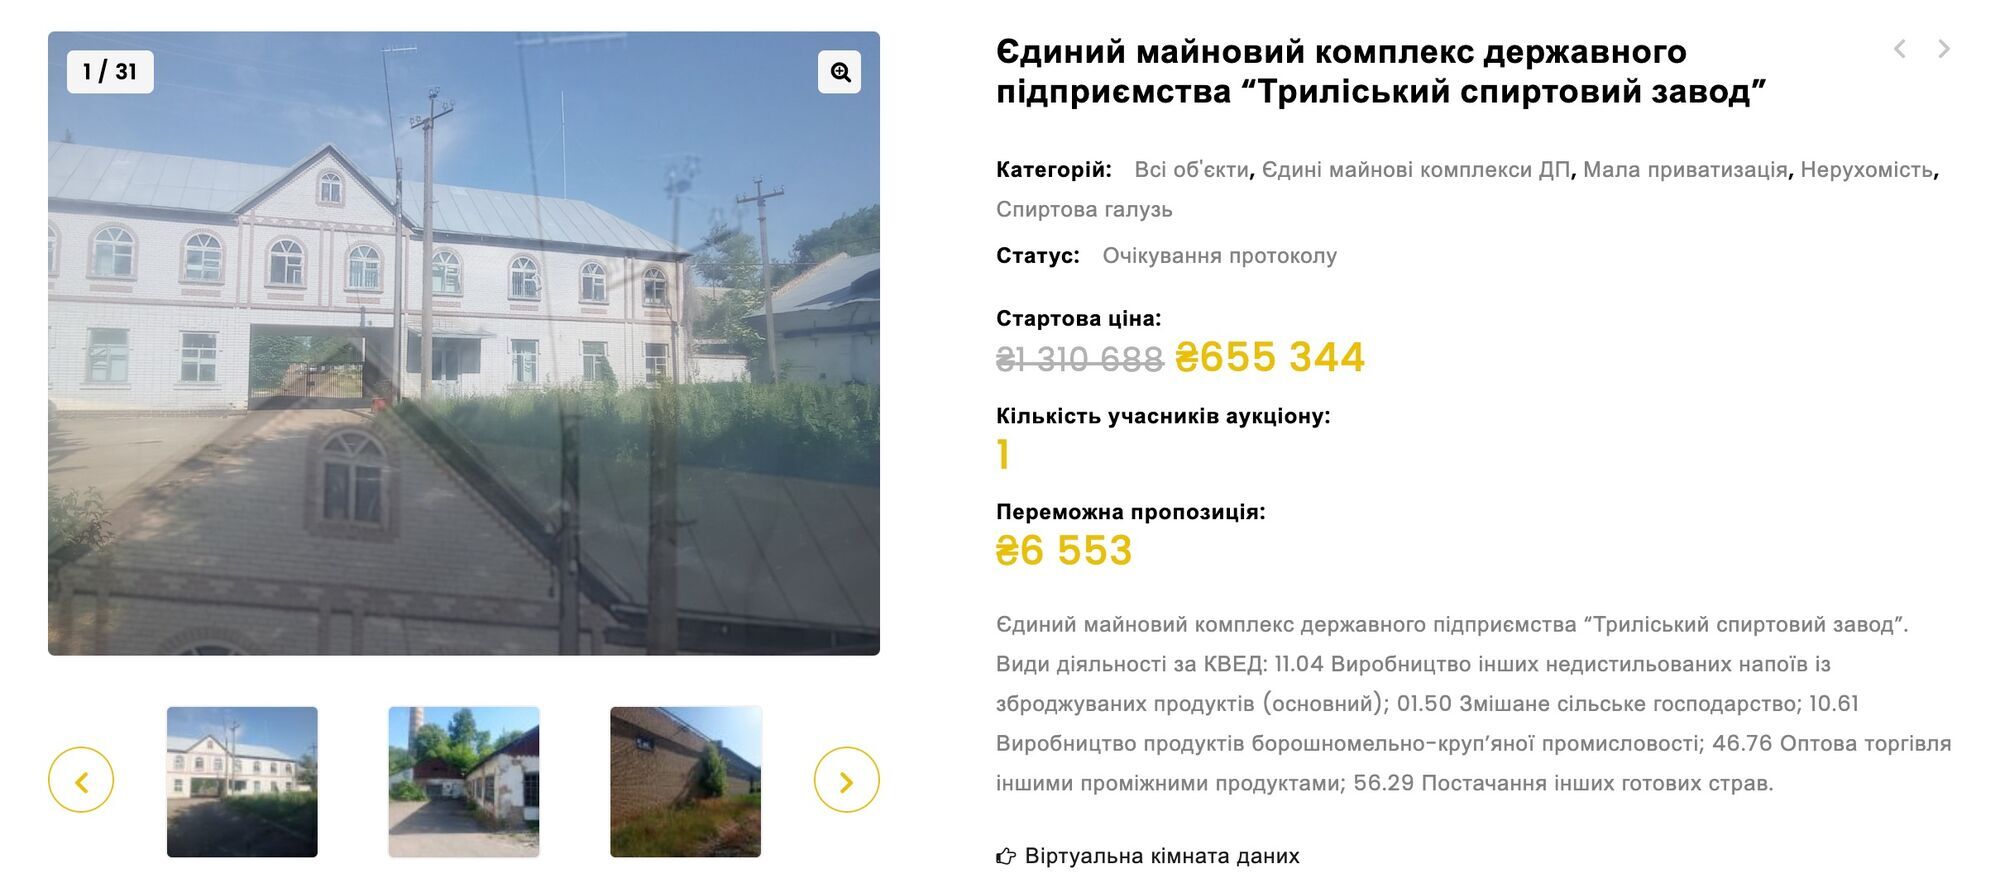 Спиртовой завод в Фастовской области продали за 6,5 тыс. грн